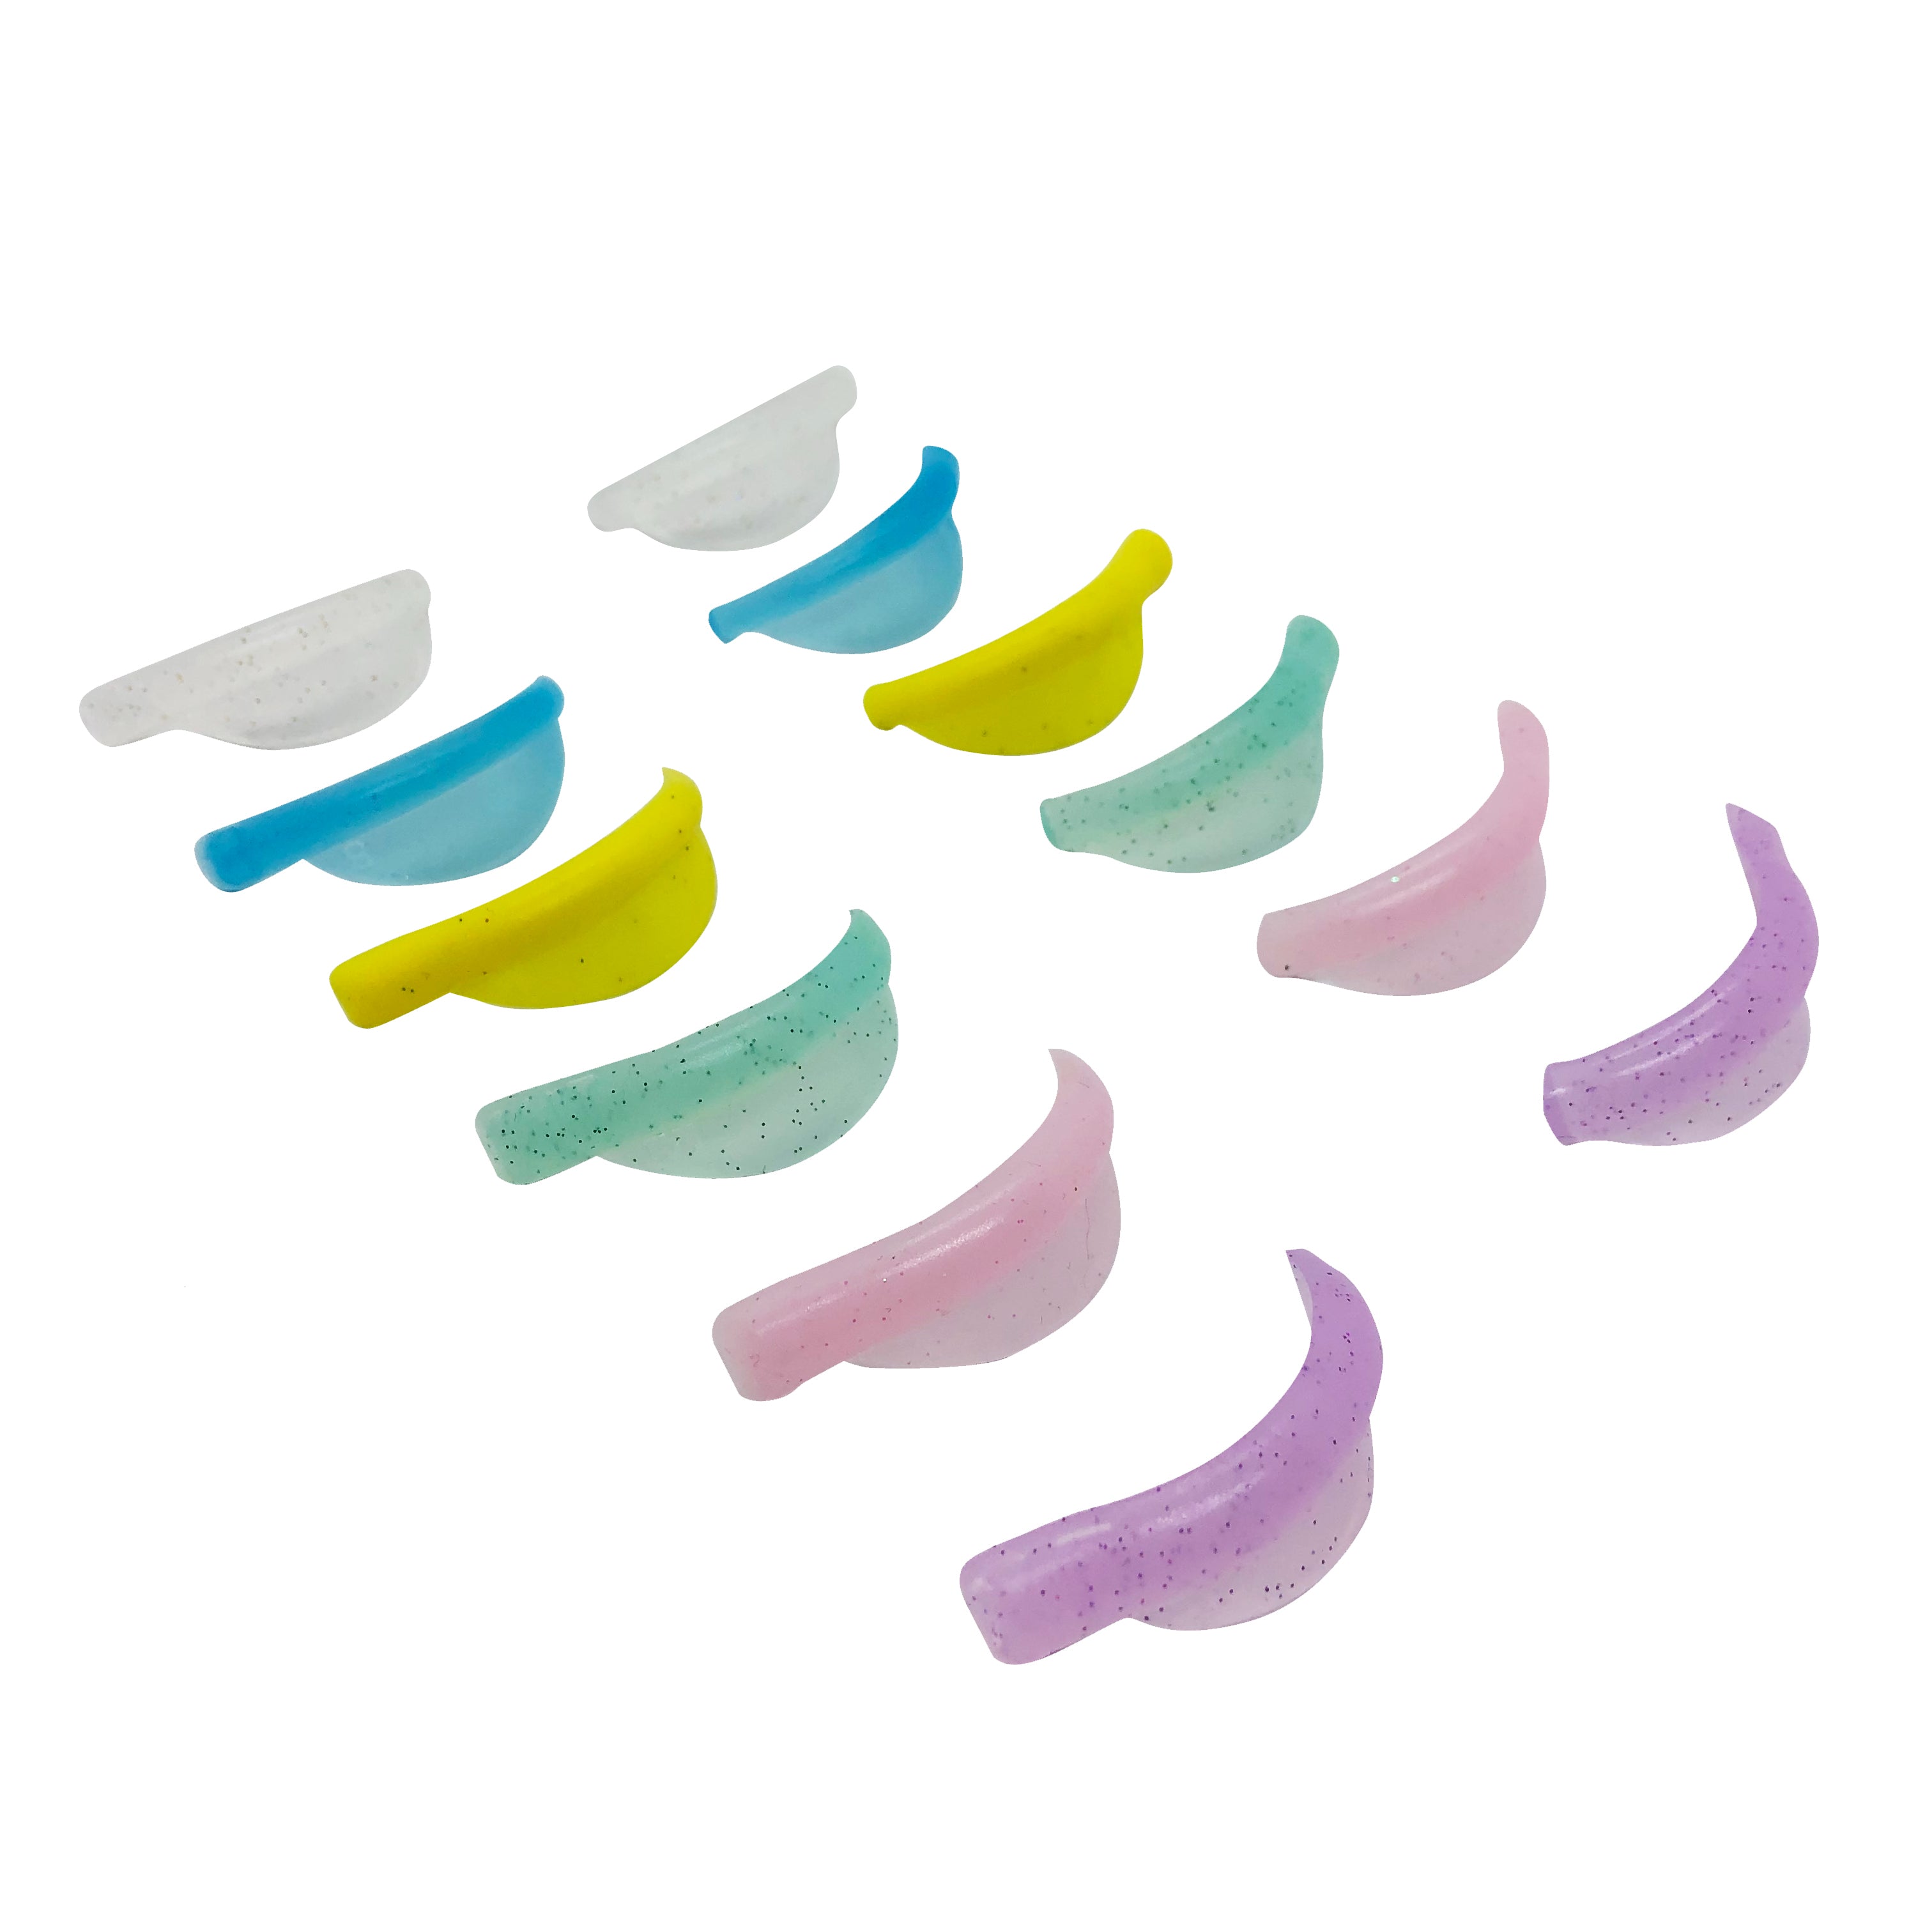 Flexi Lift Unicorn - Professional curlers for eyelash lamination